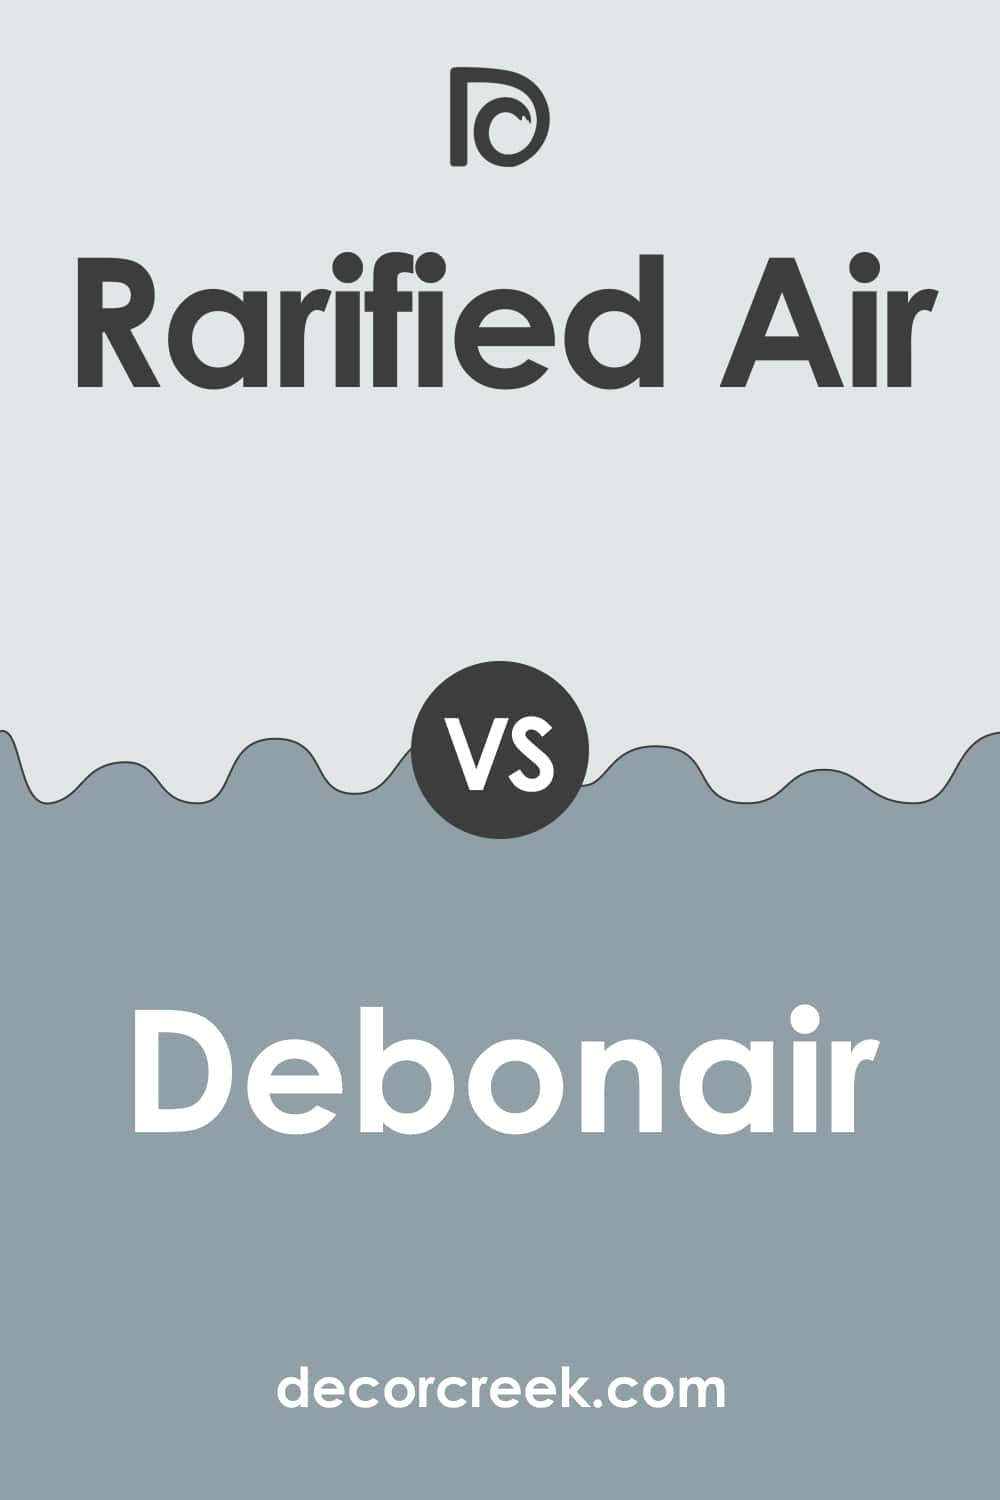 Rarified Air vs Debonair